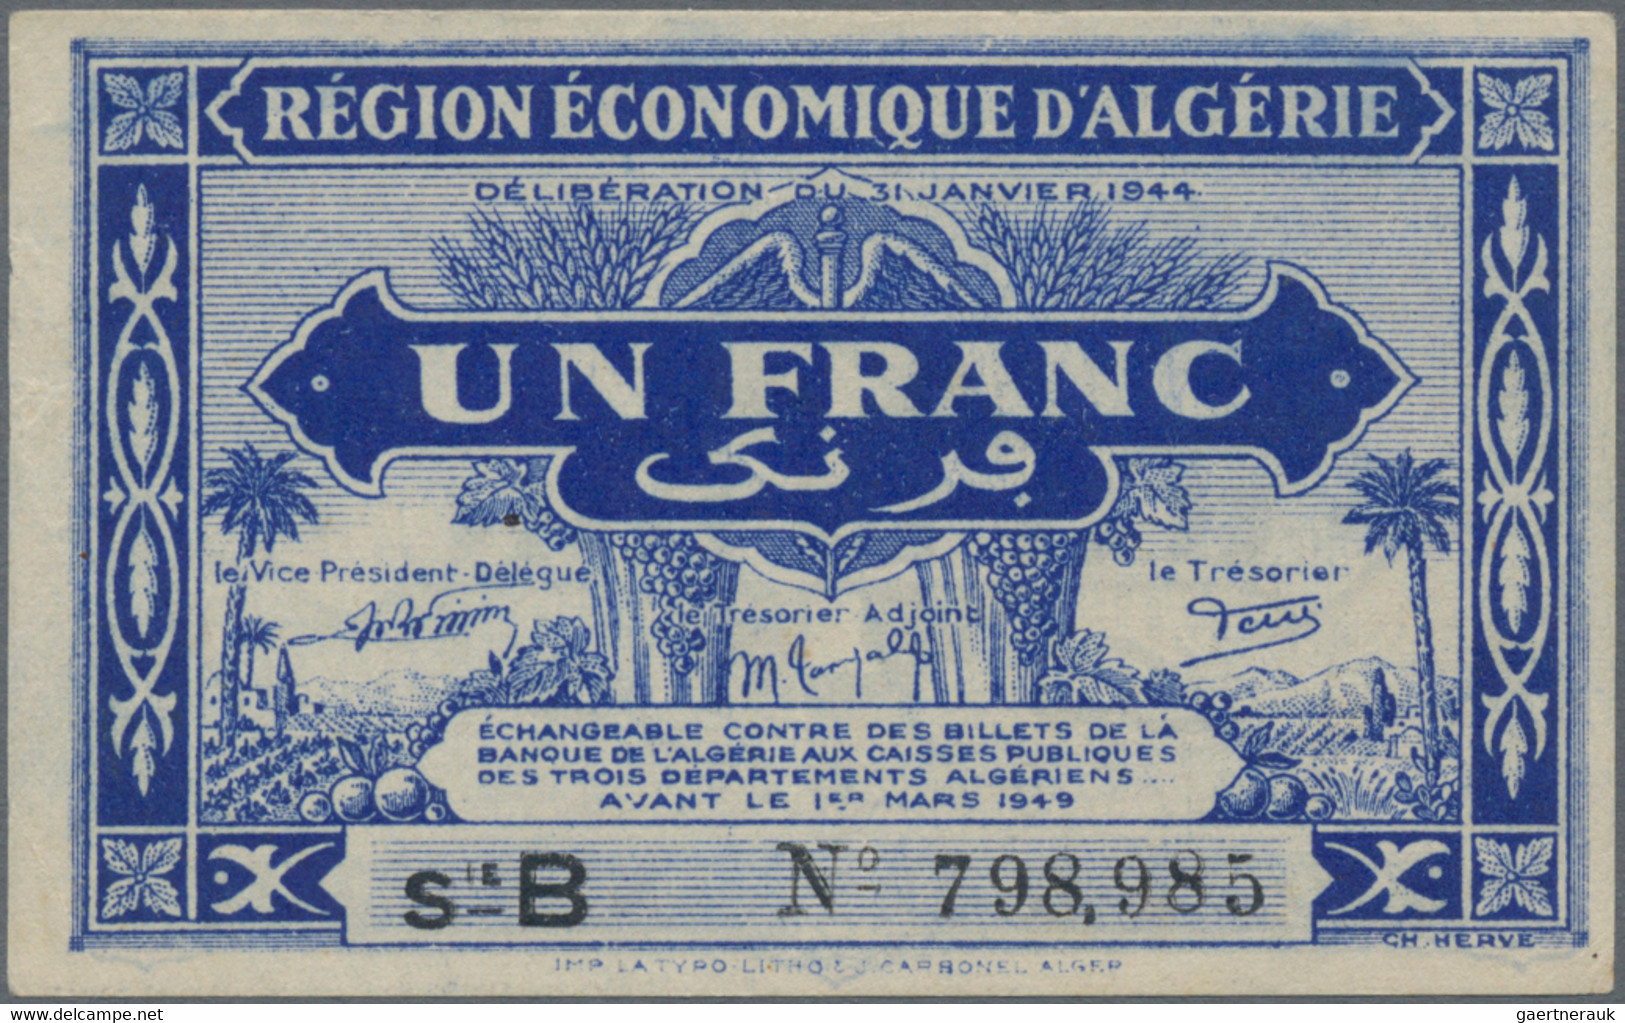 Algeria: Trésorerie - Région Économique d'Algérie, lot with 4 banknotes L.1944 s